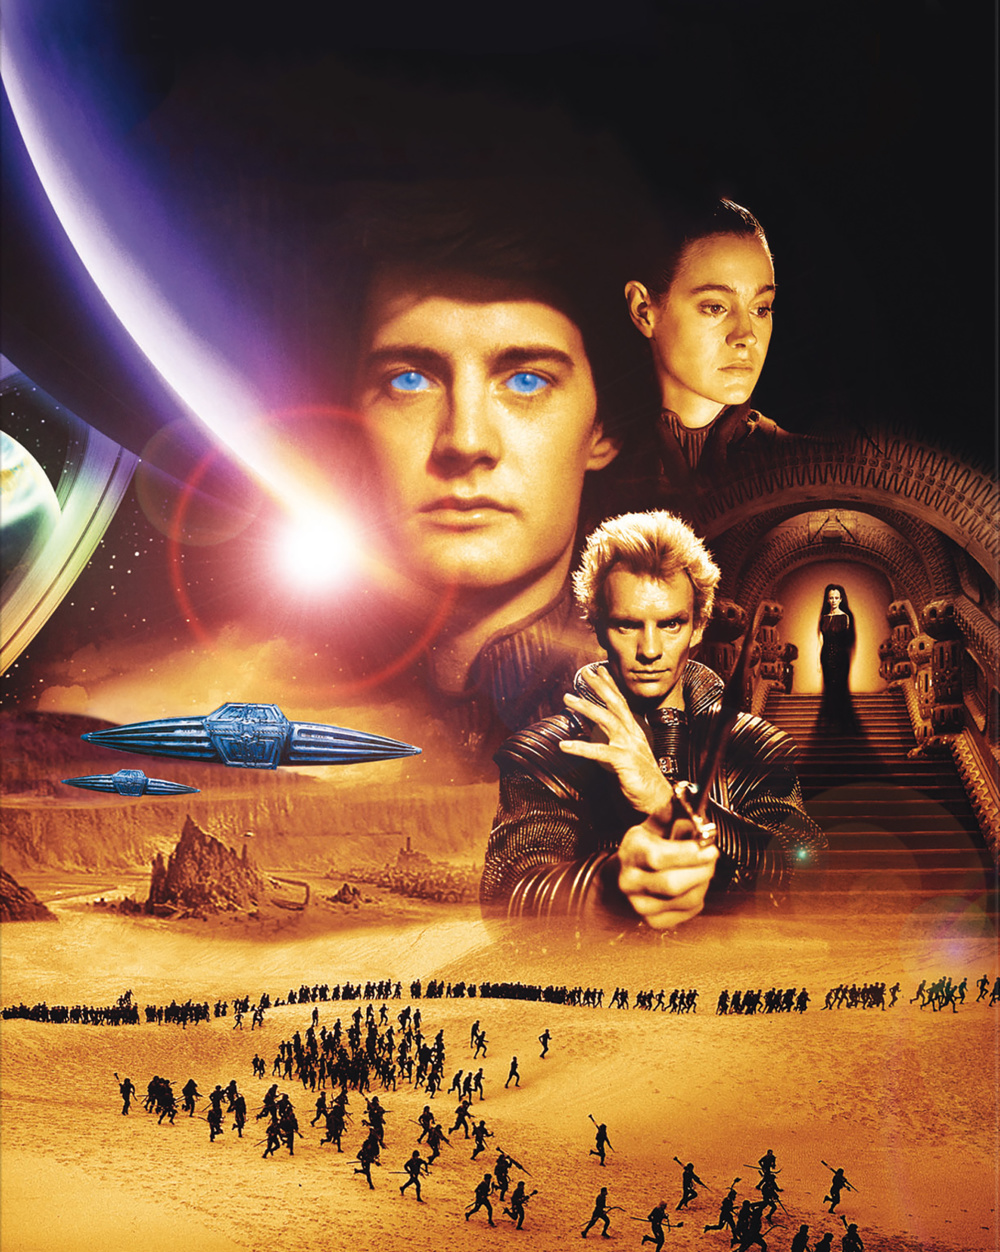 1984年版《沙丘》将于2月重返北美院线以纪念该片上映四十周年-腾讯新闻